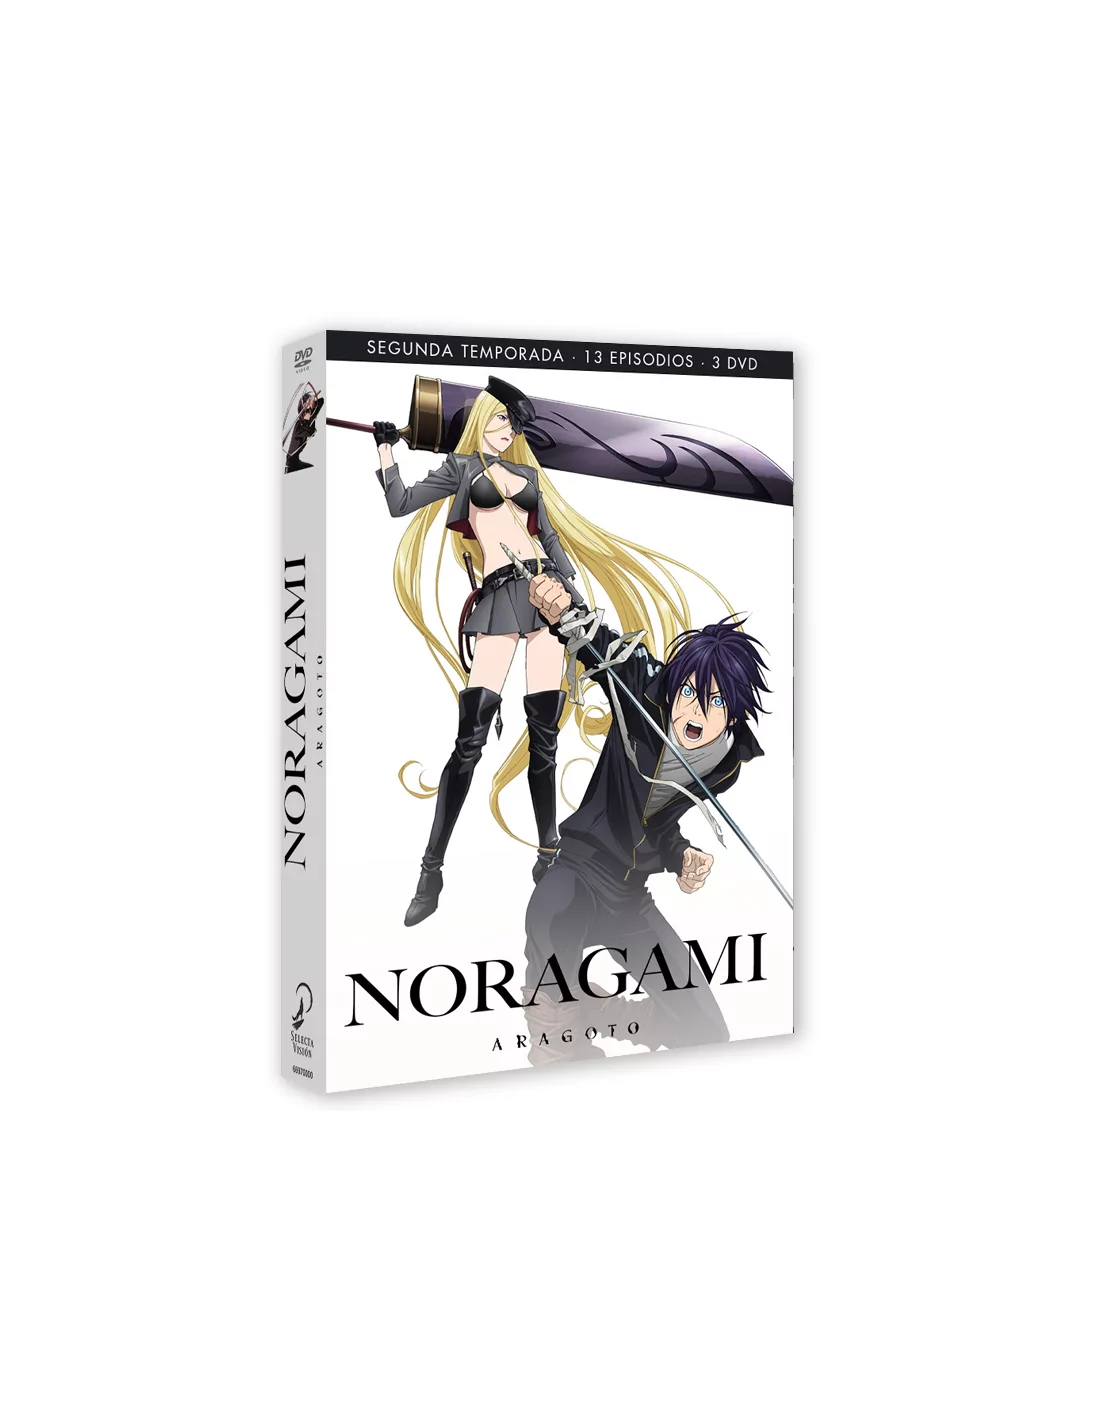 Noragami Aragoto Season 2 Episodes 1 to 13. [DVD]